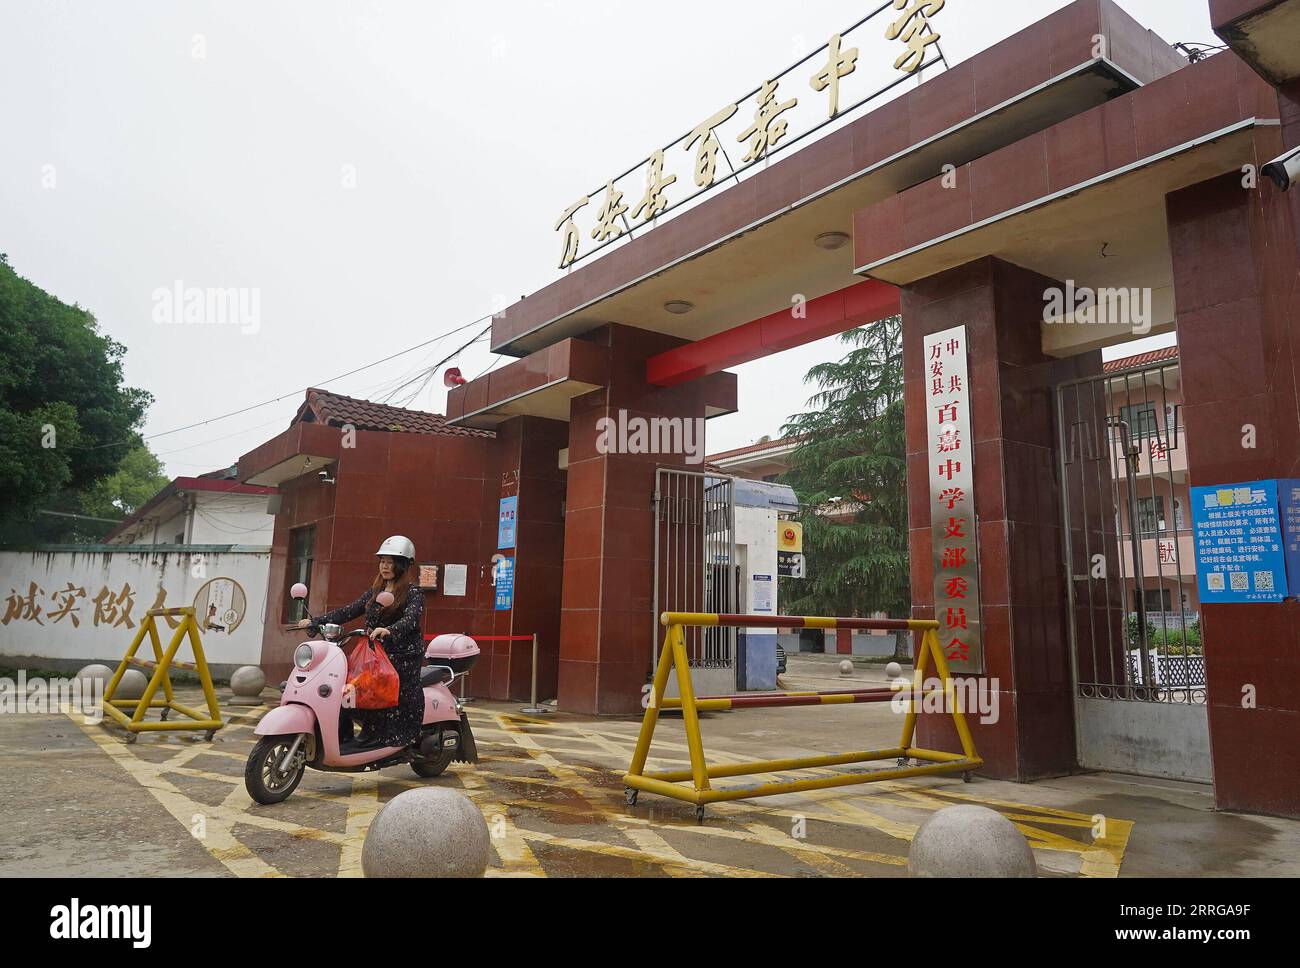 220515 -- JI AN, 15 maggio 2022 -- Guo Wanmei cavalca una bicicletta elettrica fino alla casa dei suoi studenti nella contea di Wan An, provincia del Jiangxi della Cina orientale, 12 maggio 2022. Quasi 200 insegnanti forniscono insegnamenti a domicilio per 83 studenti gravemente disabili nella contea da quasi tre anni. CINA-JIANGXI-STUDENTI DISABILI - INSEGNAMENTO A DOMICILIO CN WANXXIANG PUBLICATIONXNOTXINXCHN Foto Stock